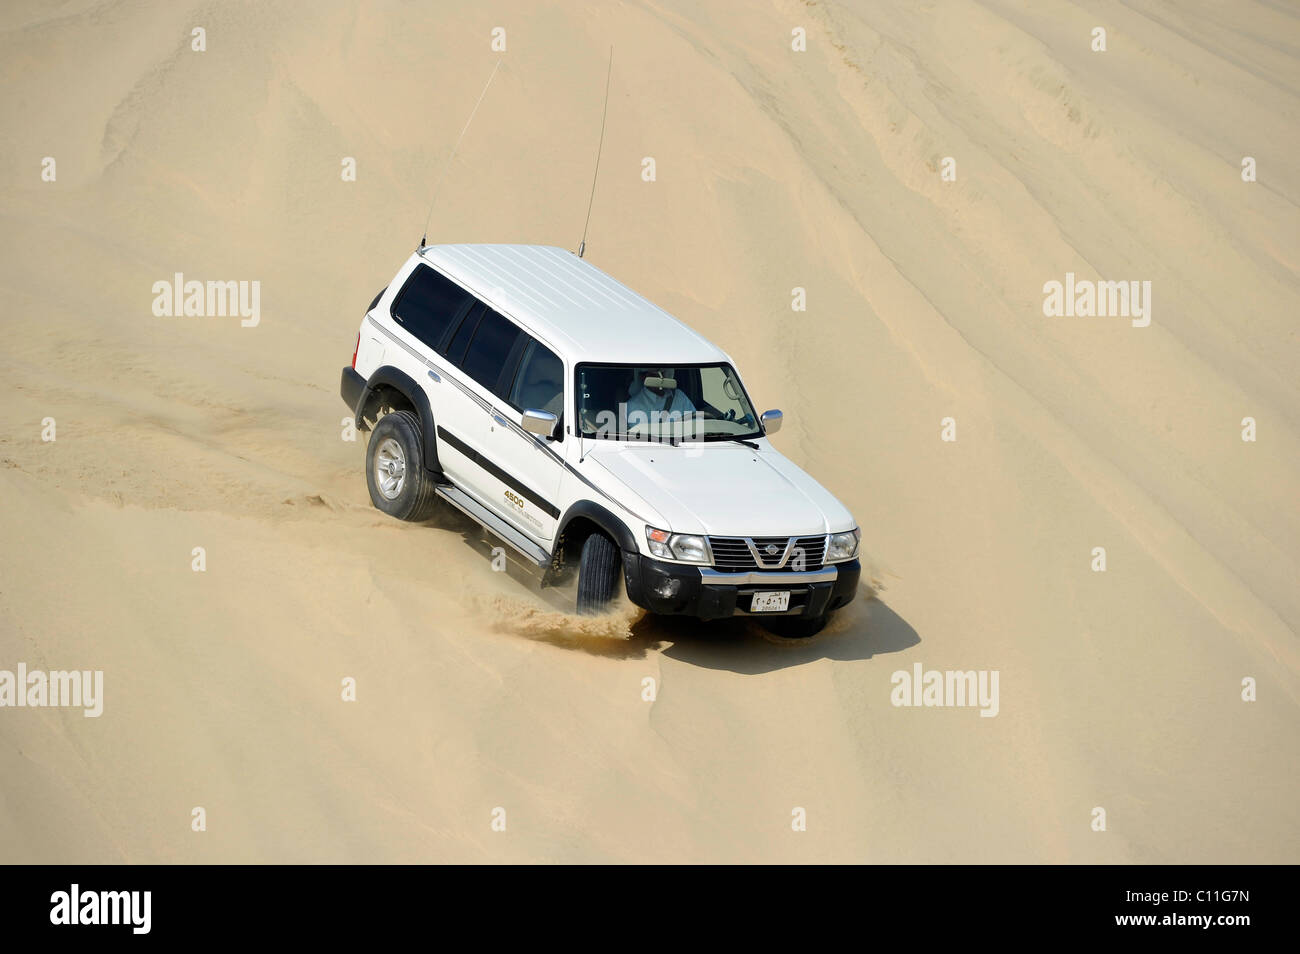 Off-Roader Nissan Patrol 4500 iniezione carburante 4x4, guida nelle dune di sabbia, emirato del Qatar, Golfo Persico, Medio Oriente e Asia Foto Stock